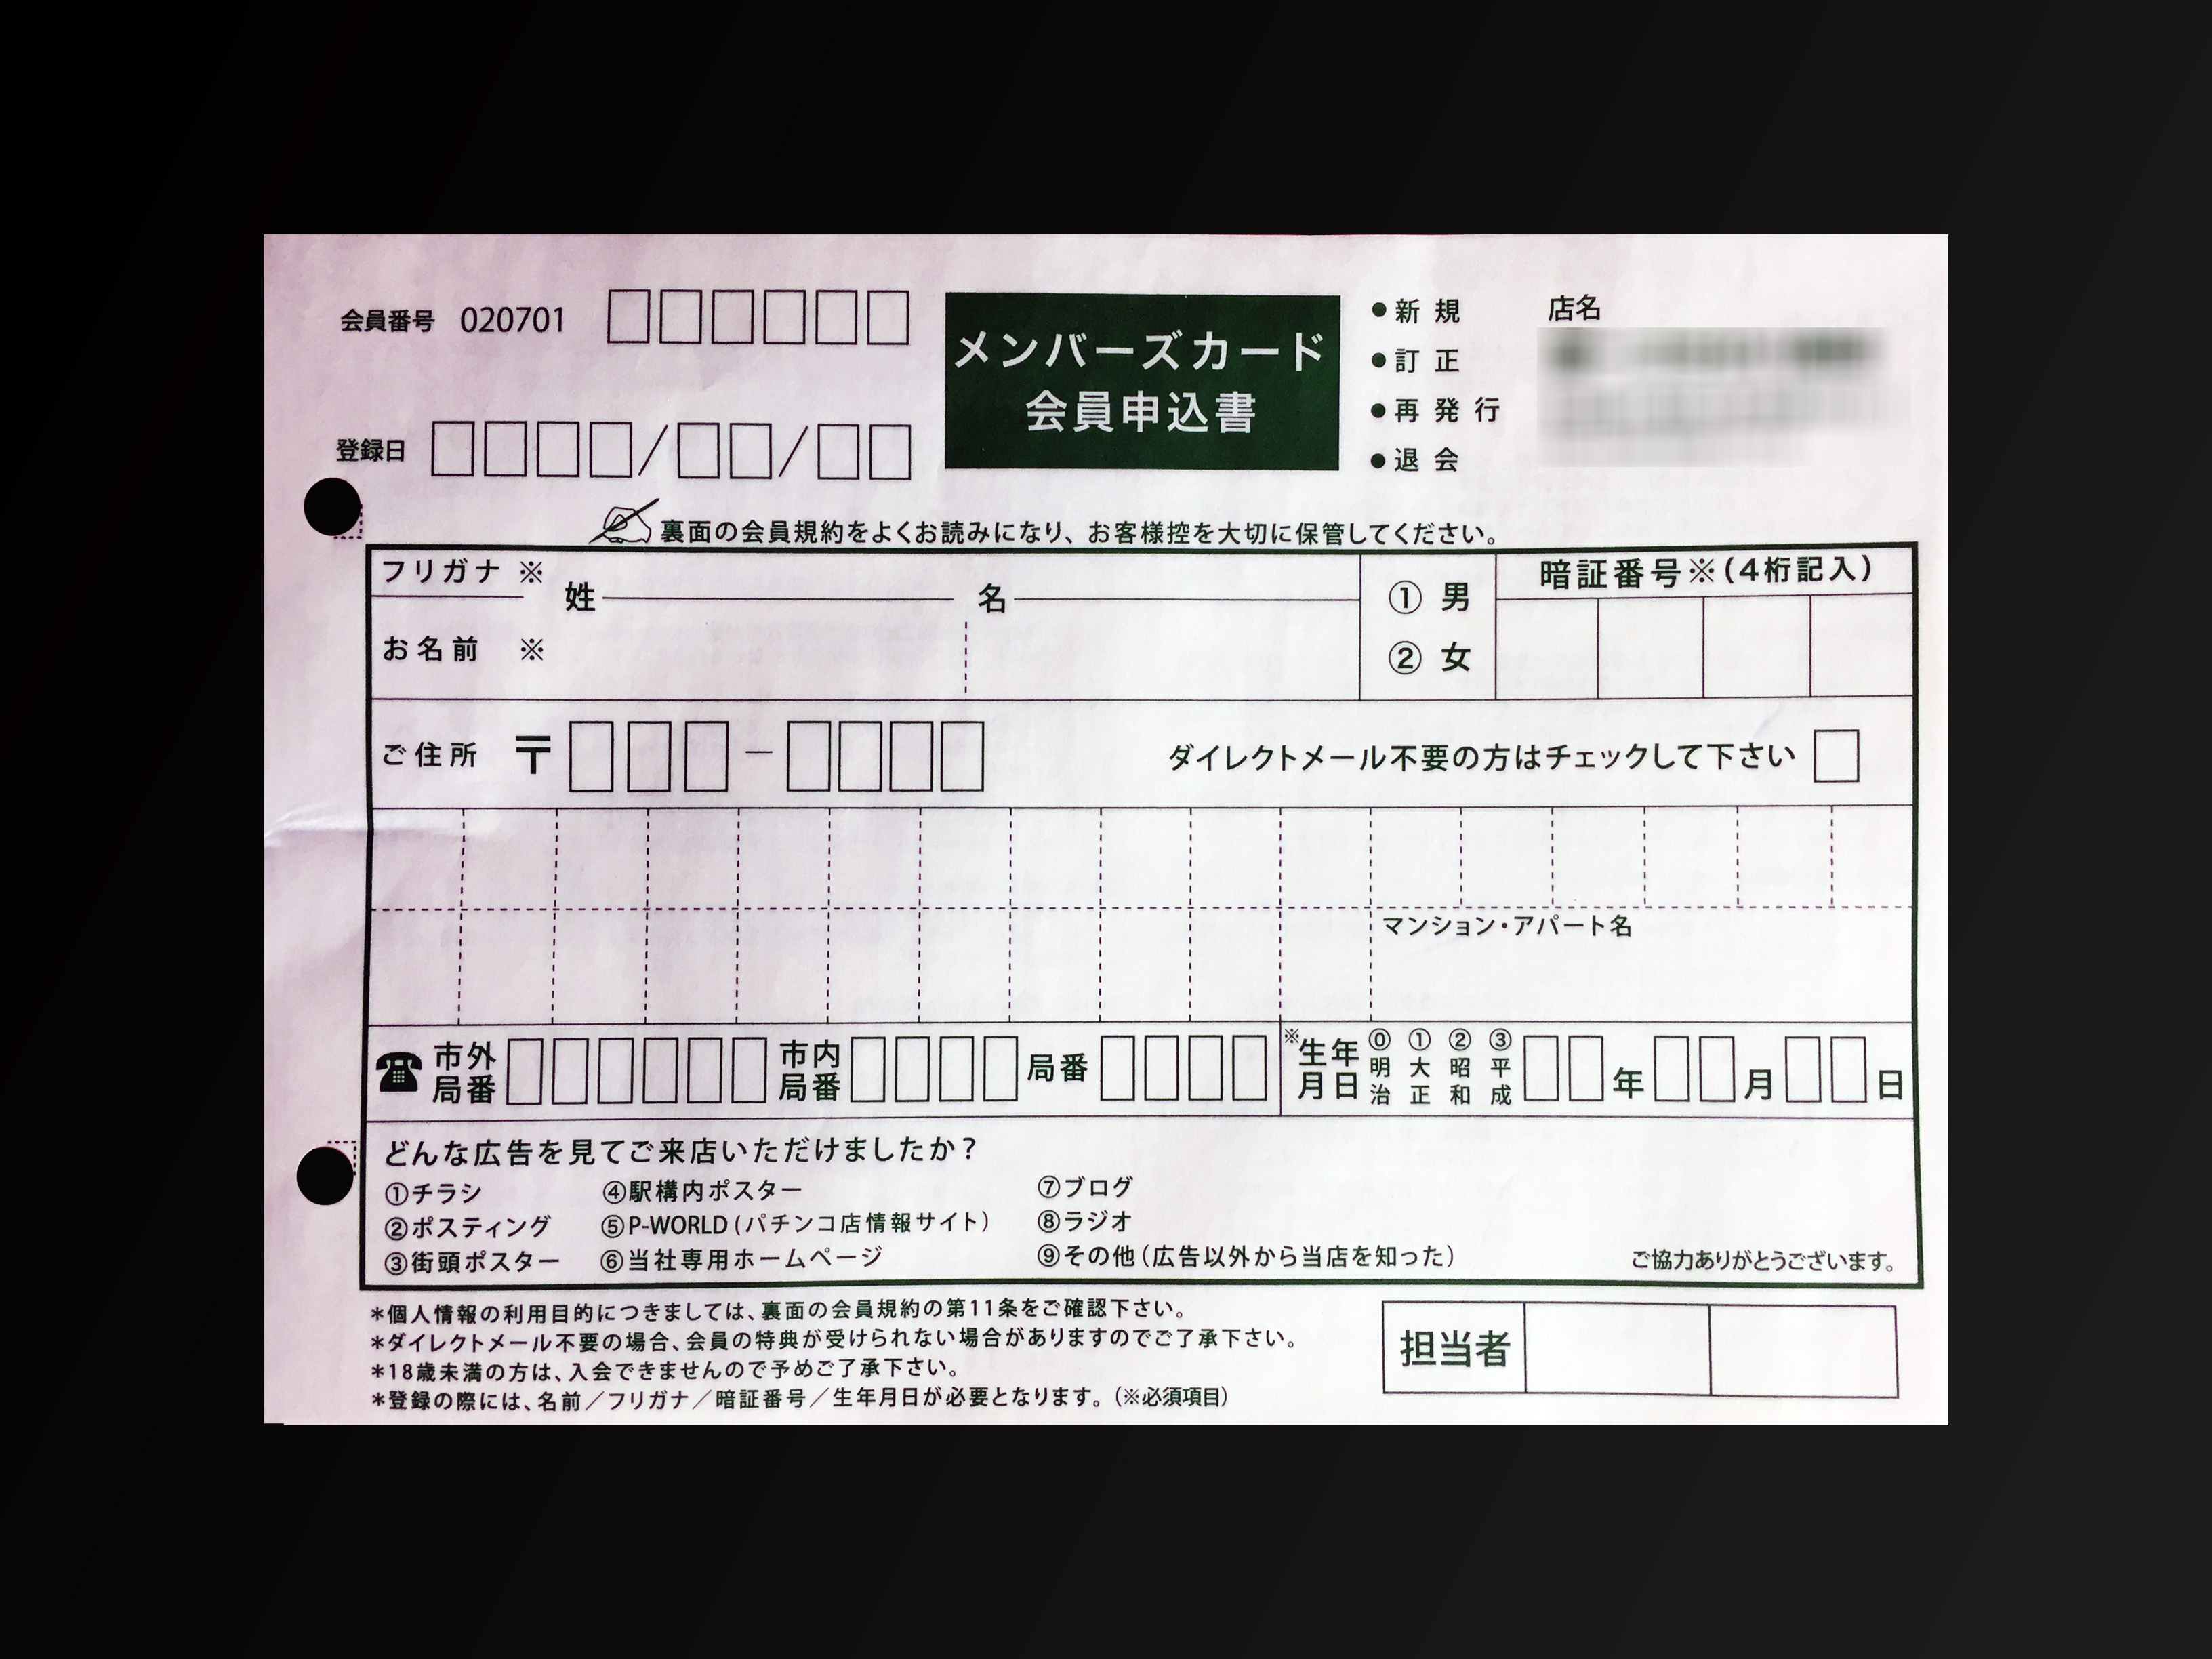 印刷業で使用するメンバーズカード会員申込書(2枚複写)の伝票作成実績